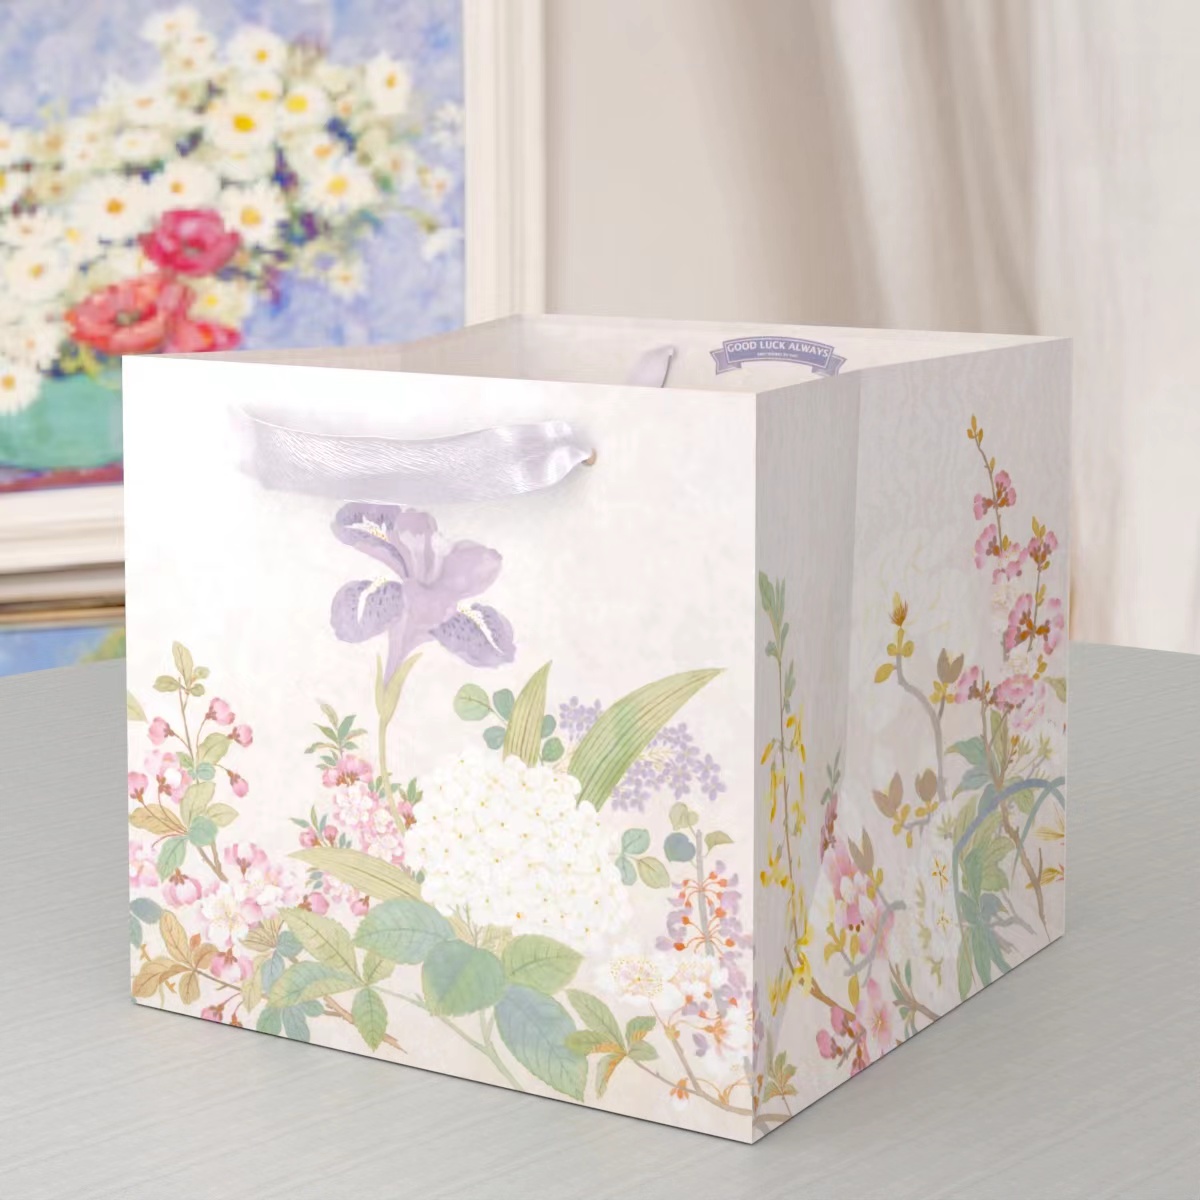 端午礼盒袋 送男女朋友 节日伴手礼 原创设计 国画花卉鲜花花束